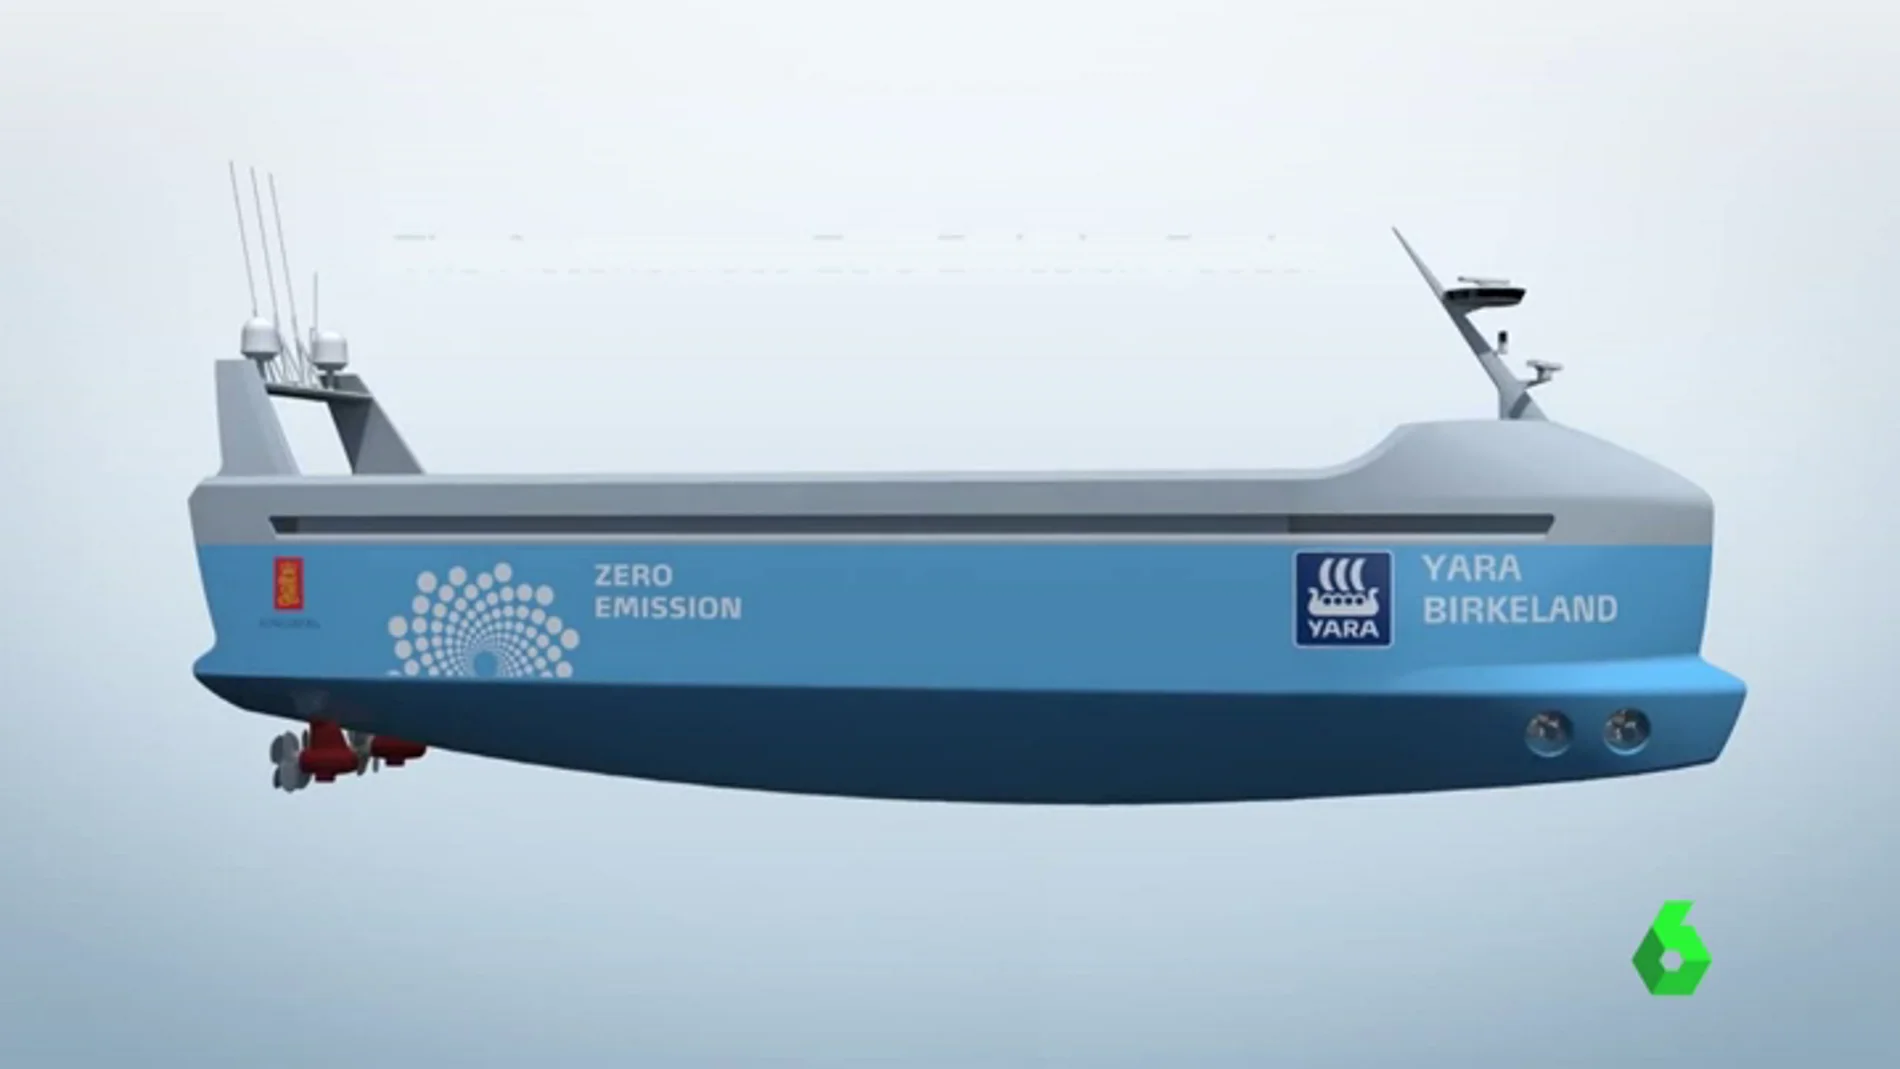 El primer buque eléctrico y autónomo viajará en 2020 sin tripulación 